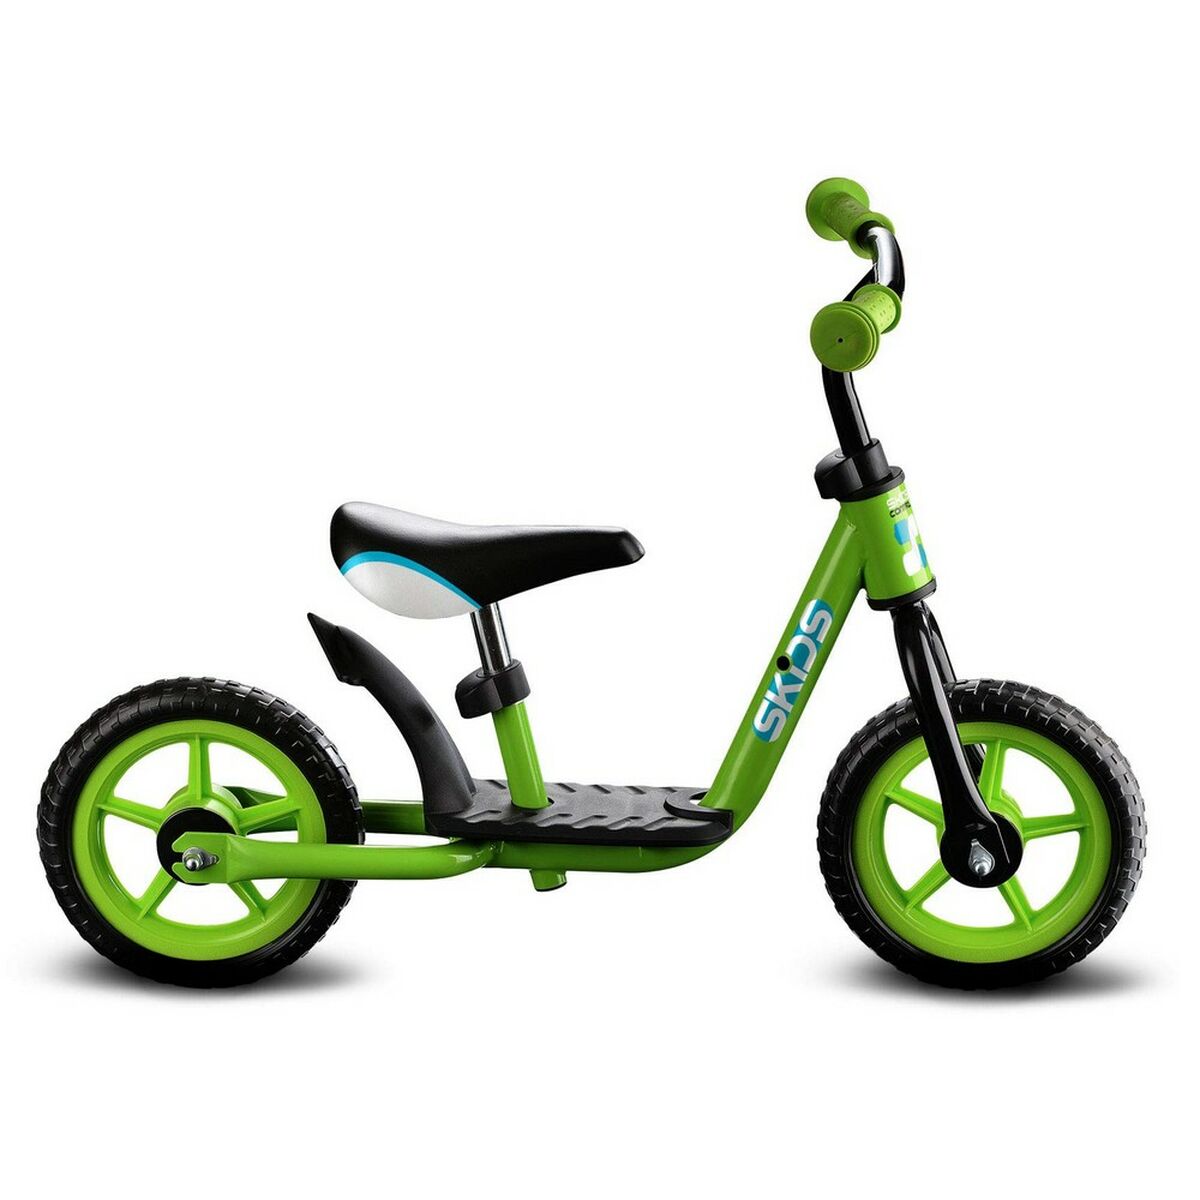 Children's Bike Skids Control Green Steel Footrest